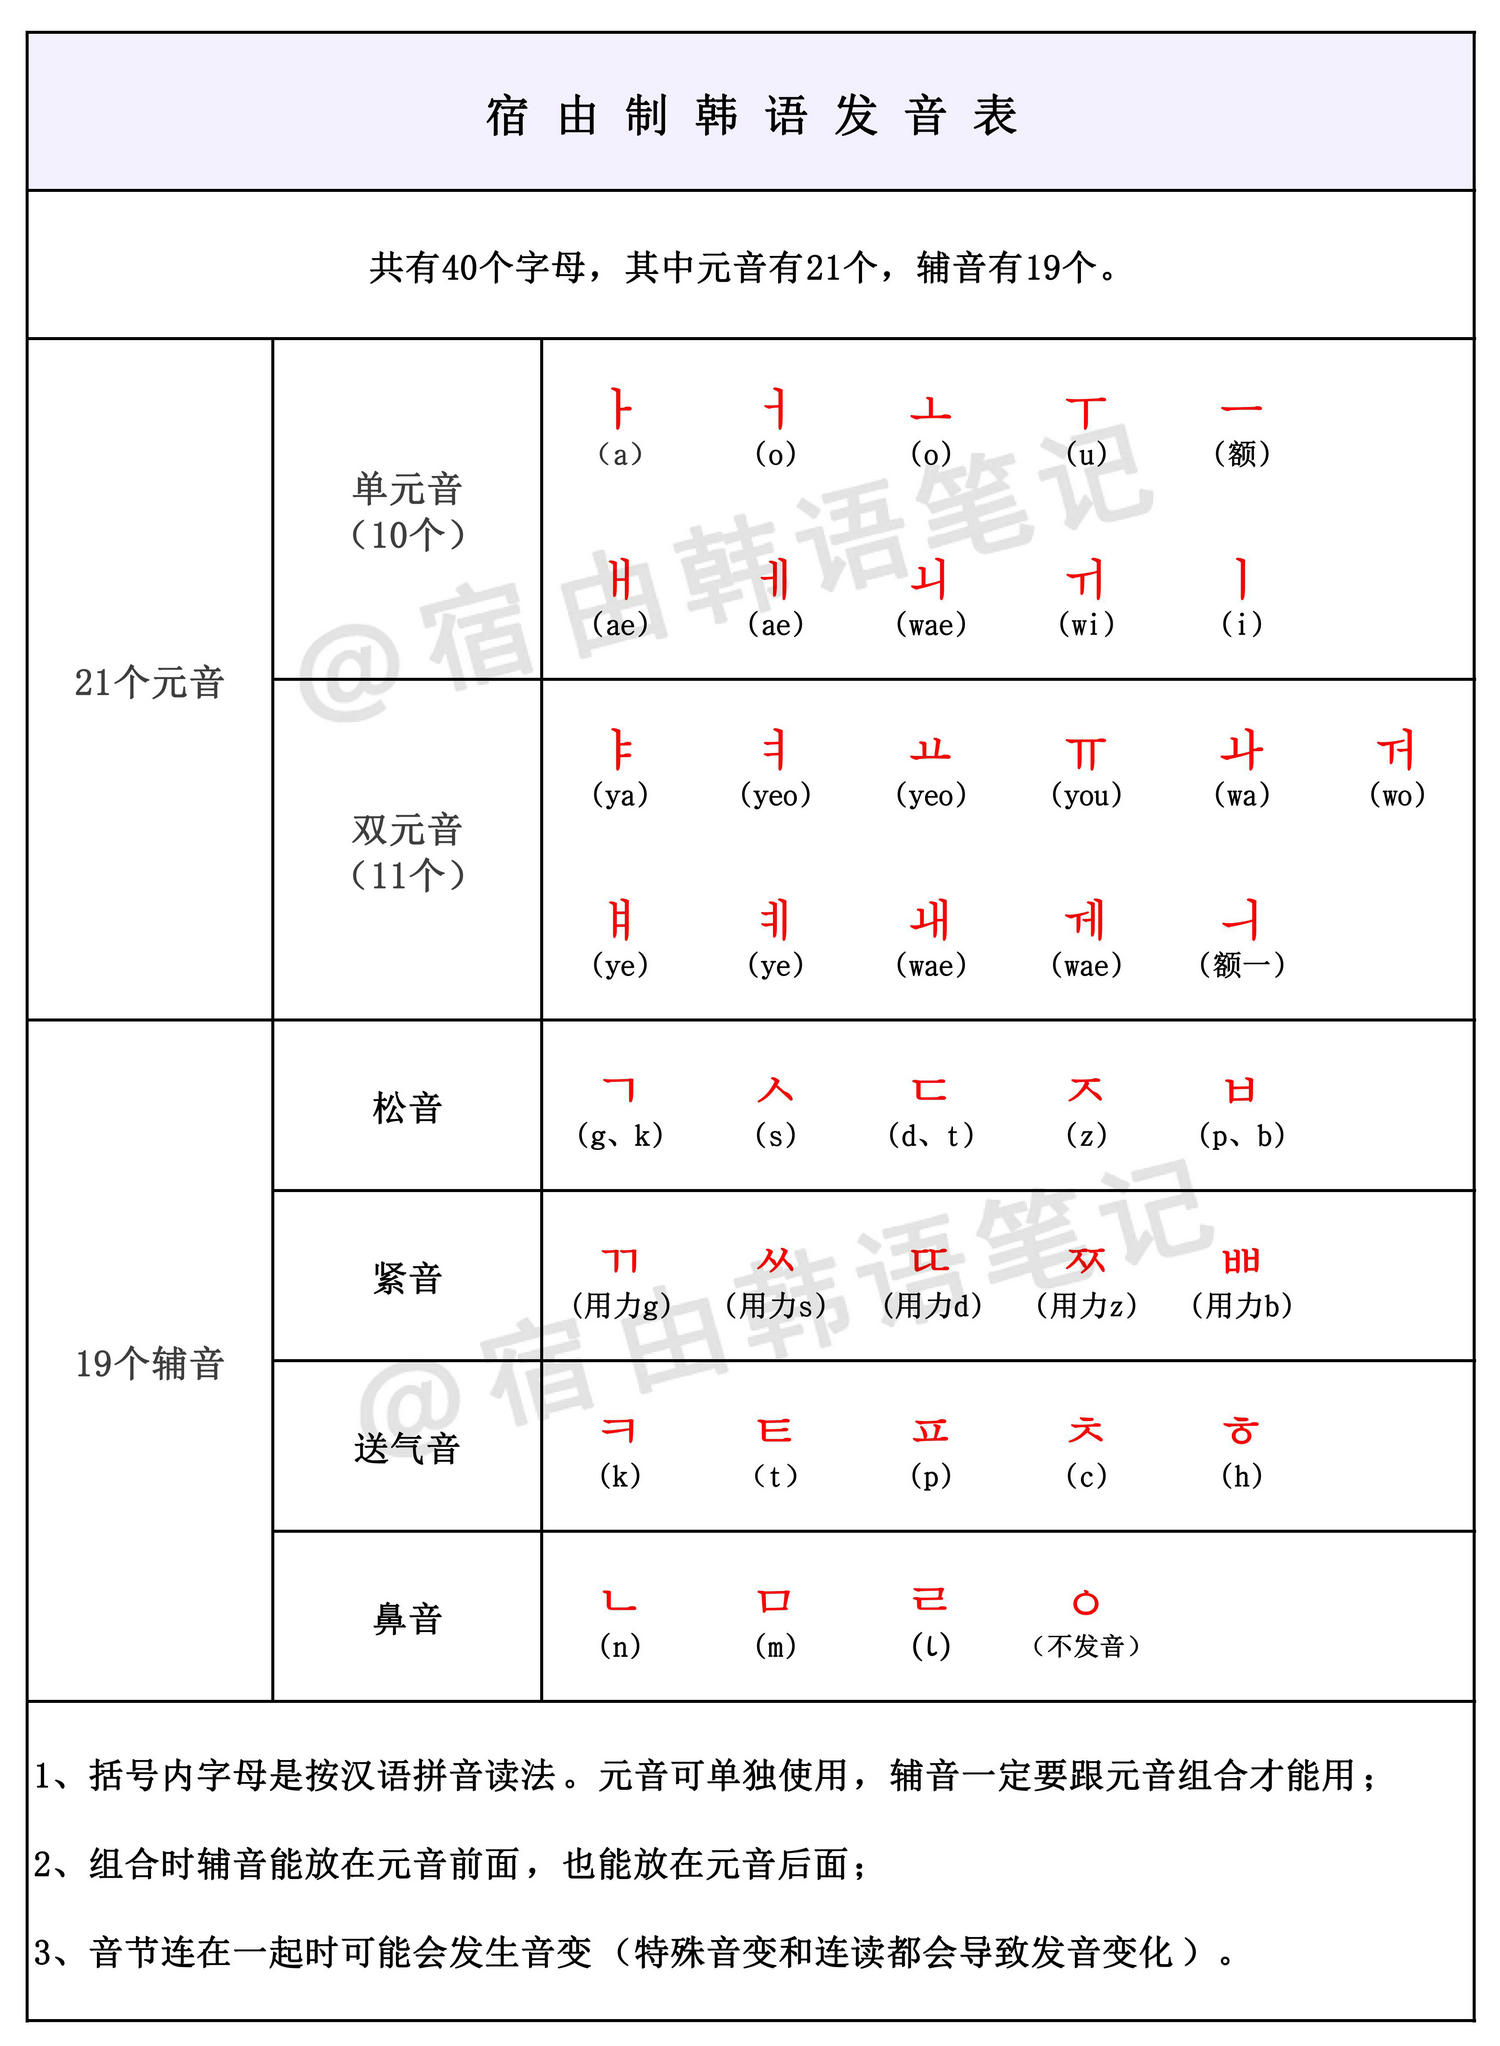 韩语音标发音顺口溜图片